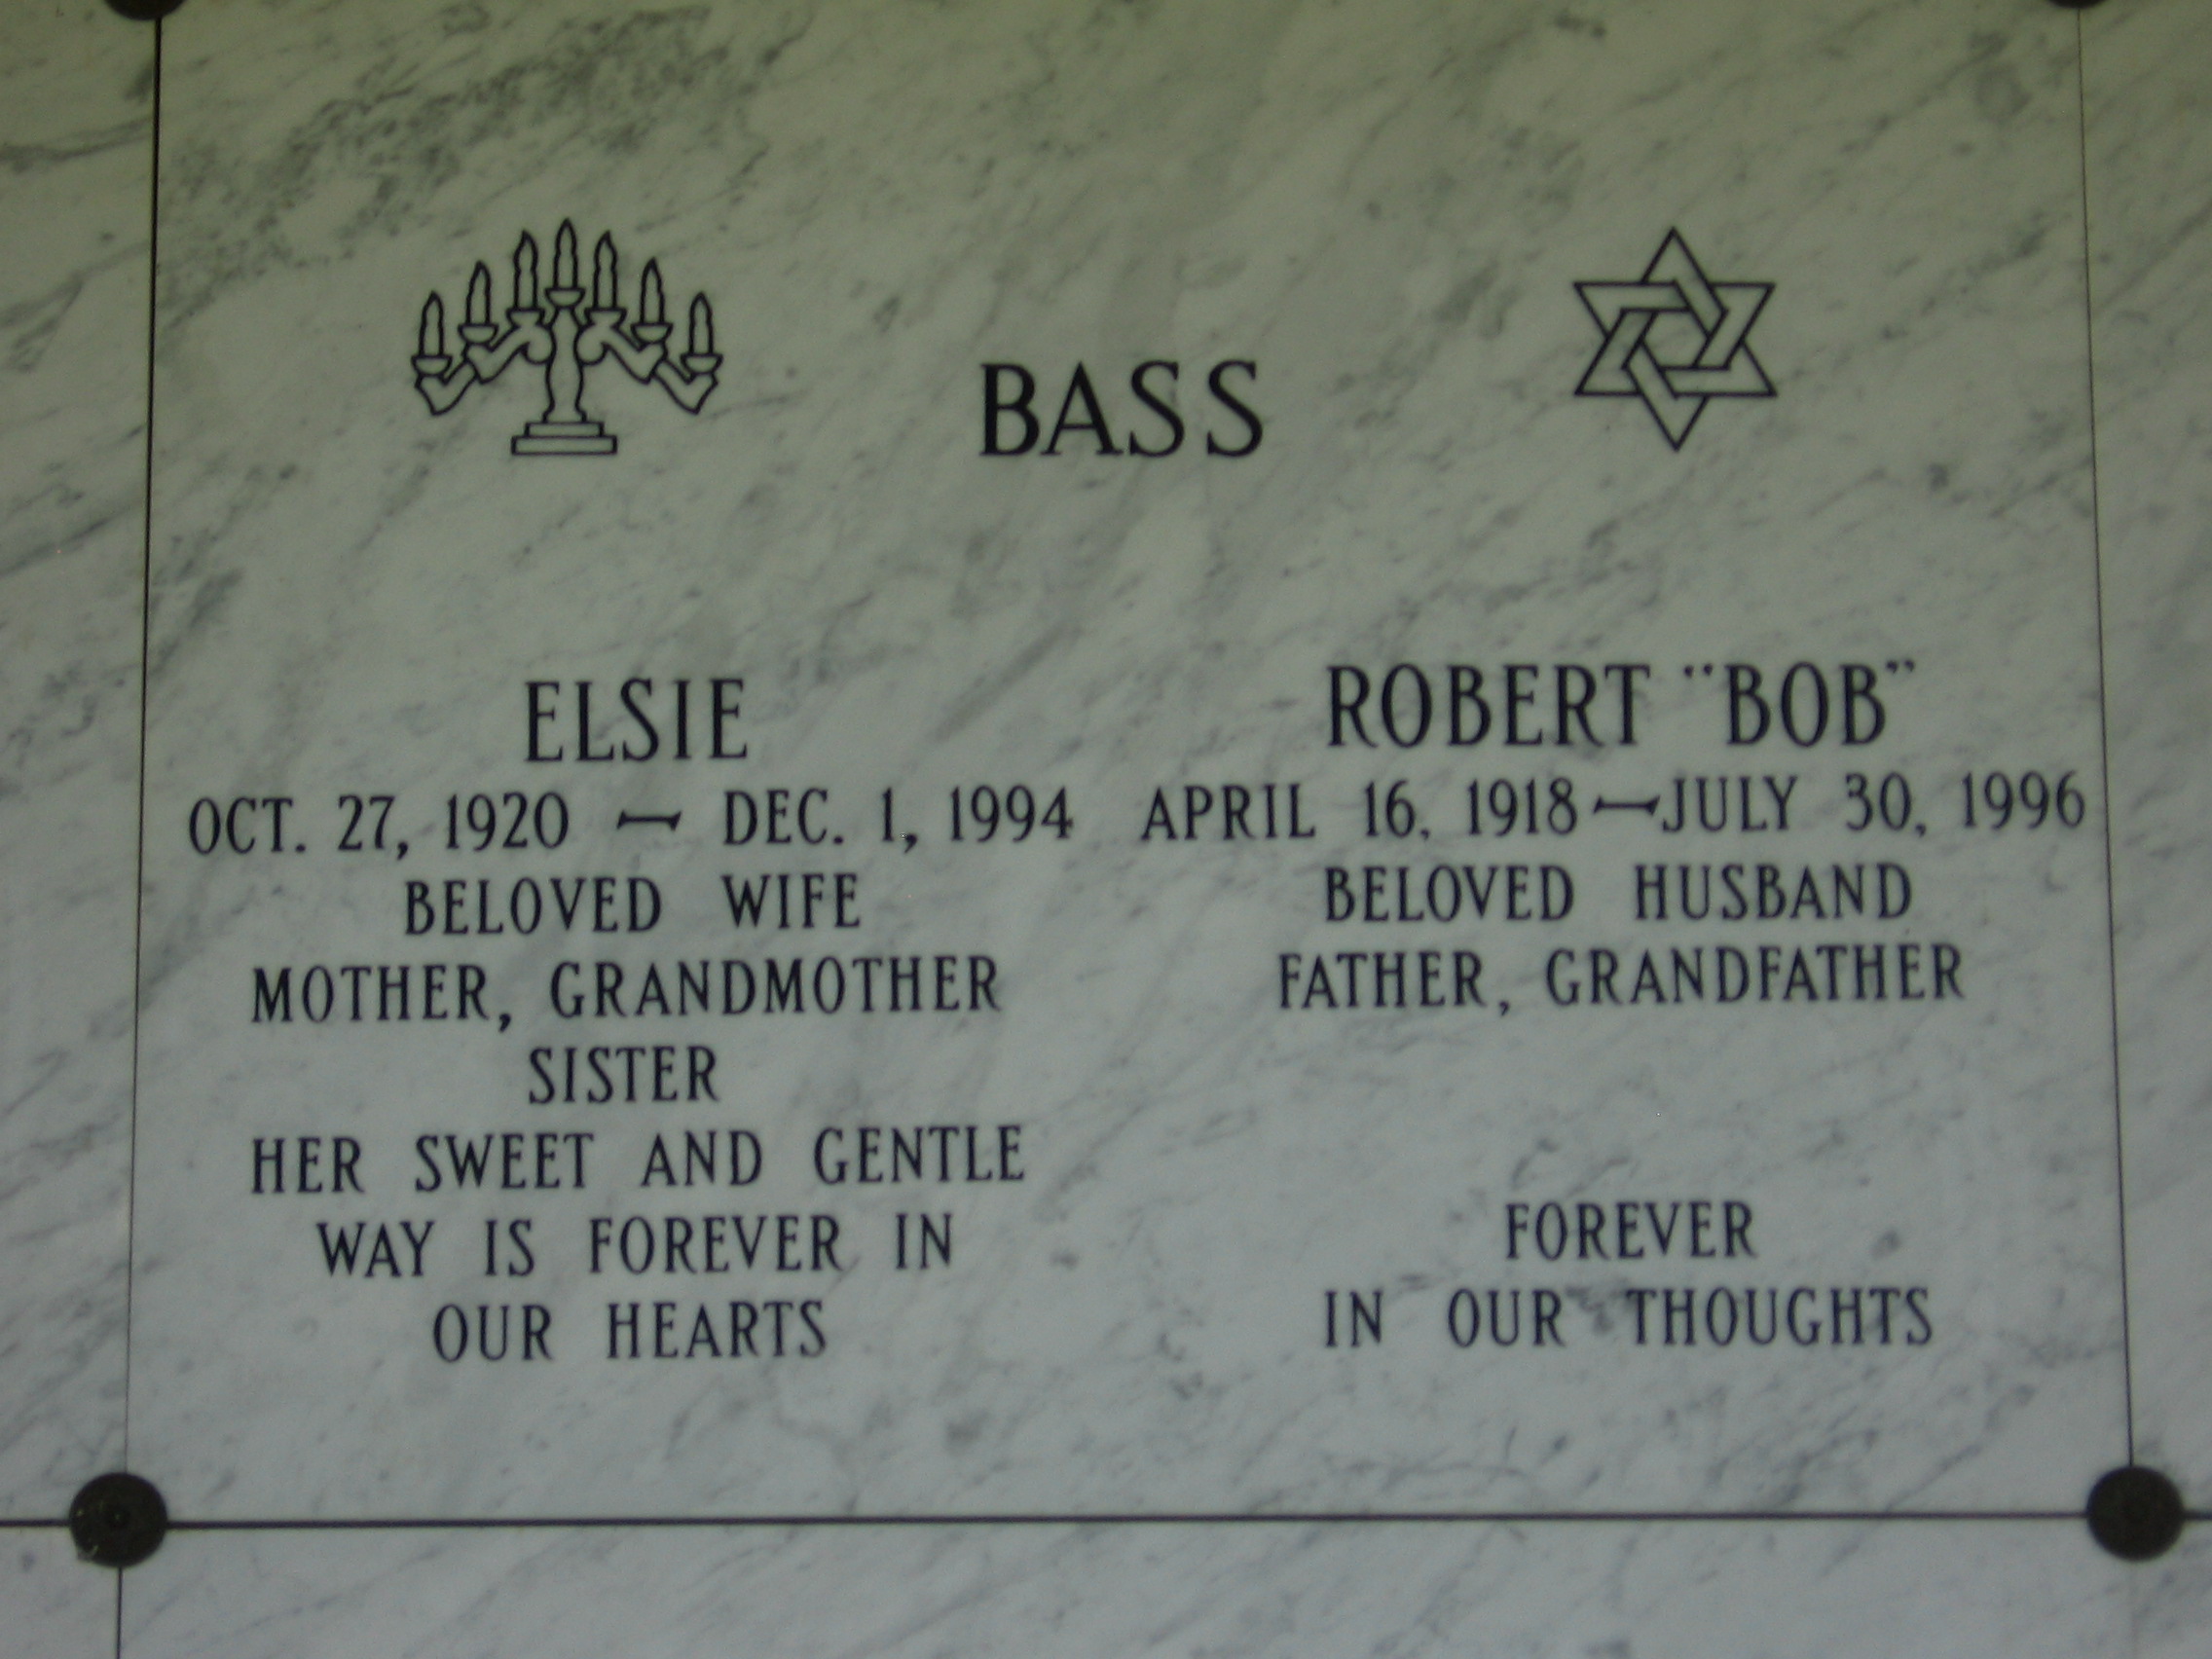 Robert "Bob" Bass